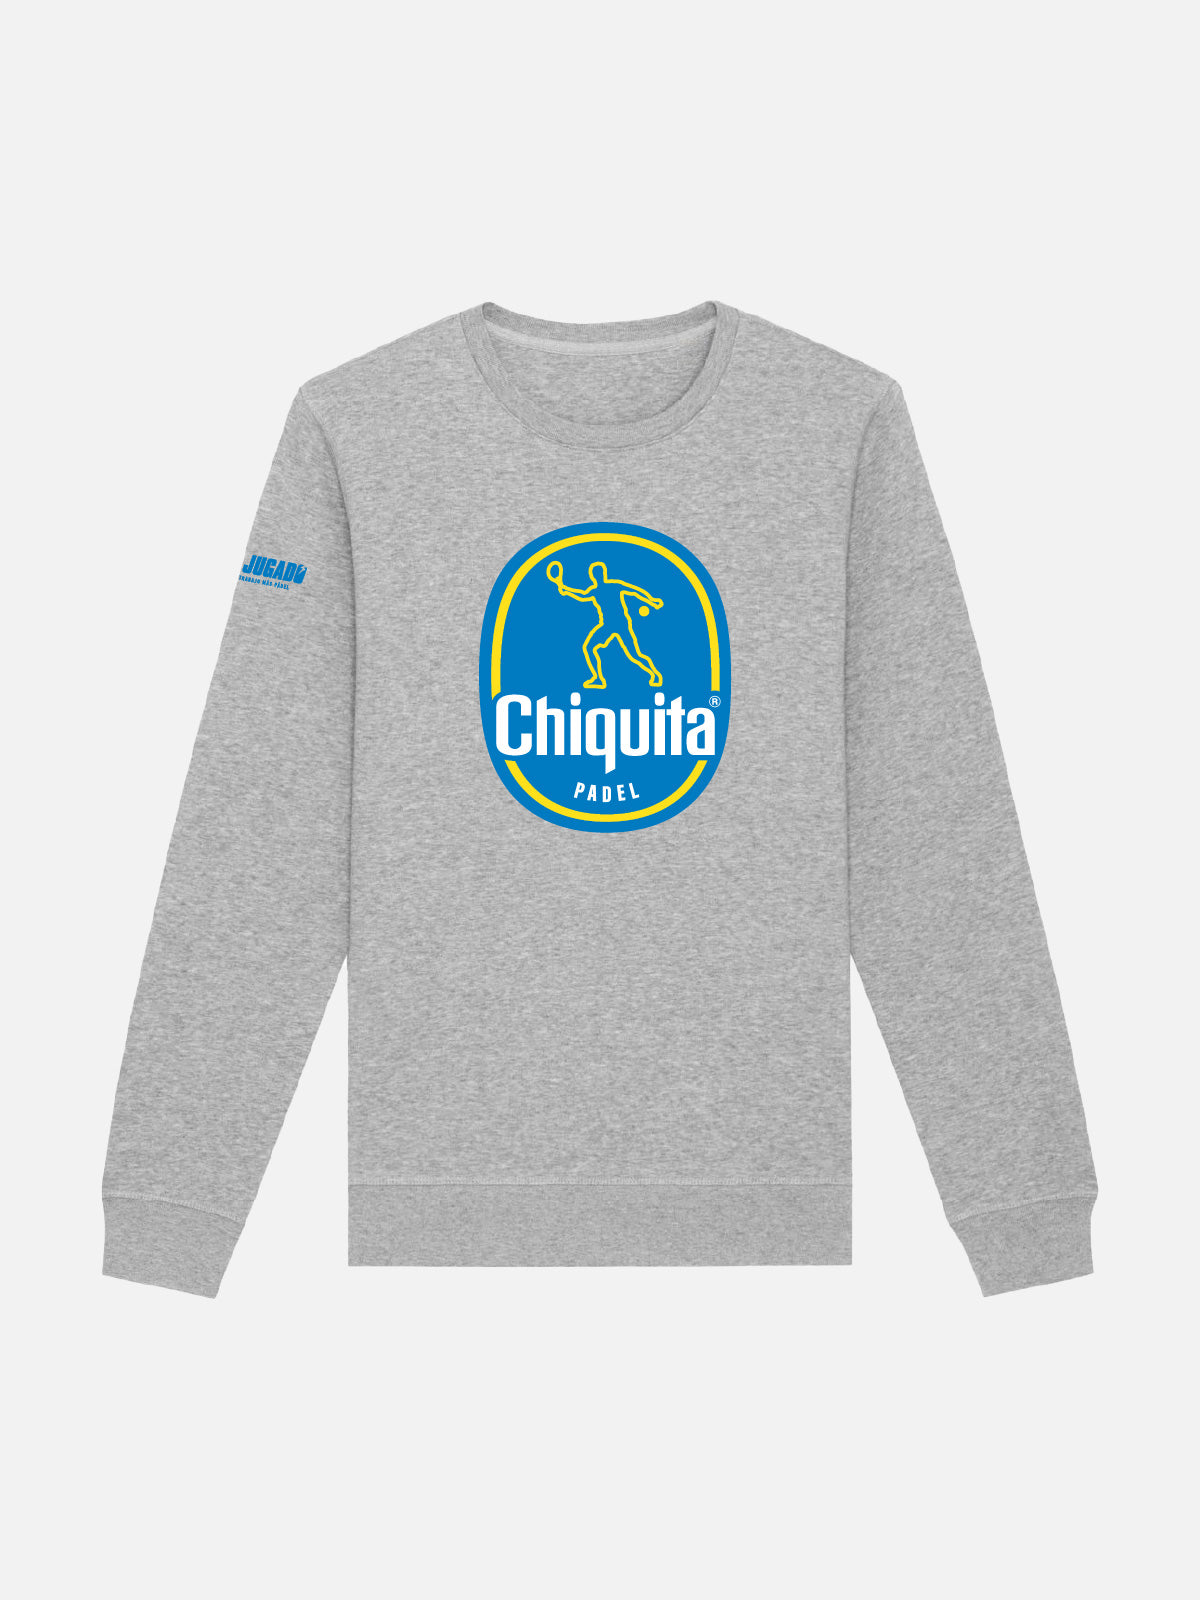 Fun Unisex Sweatshirt - Chiquita